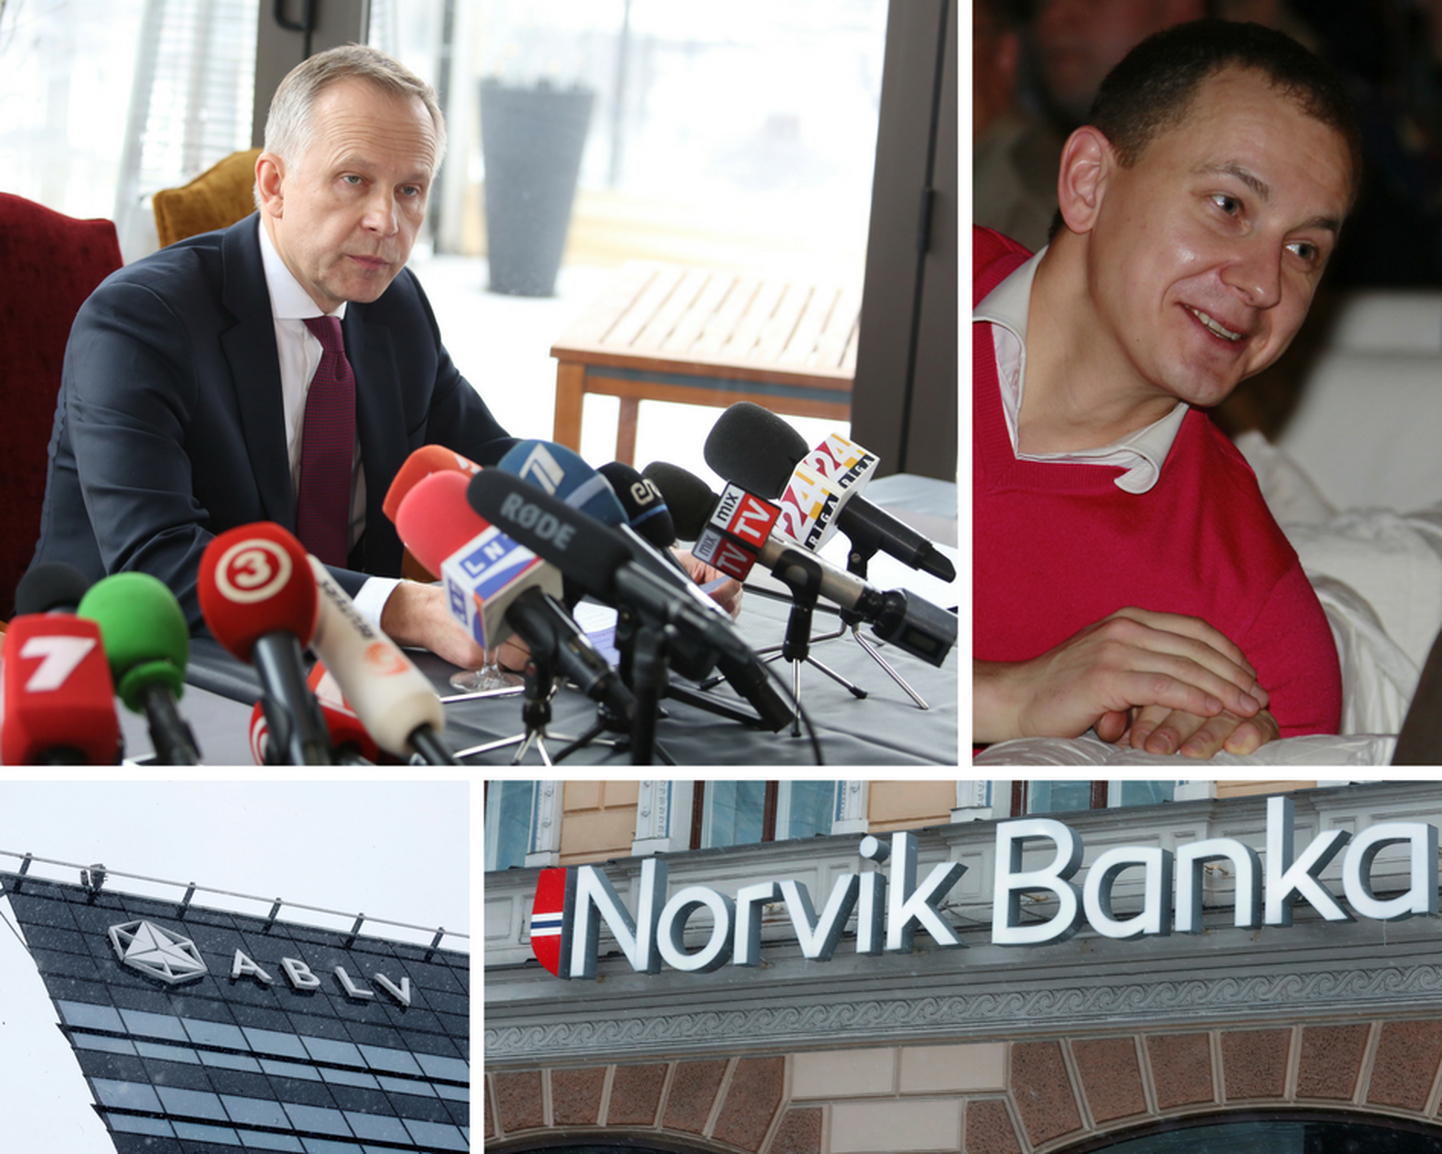 Ülevalt vasakult paremale: Ilmārs Rimšēvičs ja Grigori Guselnikov. Alt vasakult paremale: pankade ABLV ja Norvik kontorid.